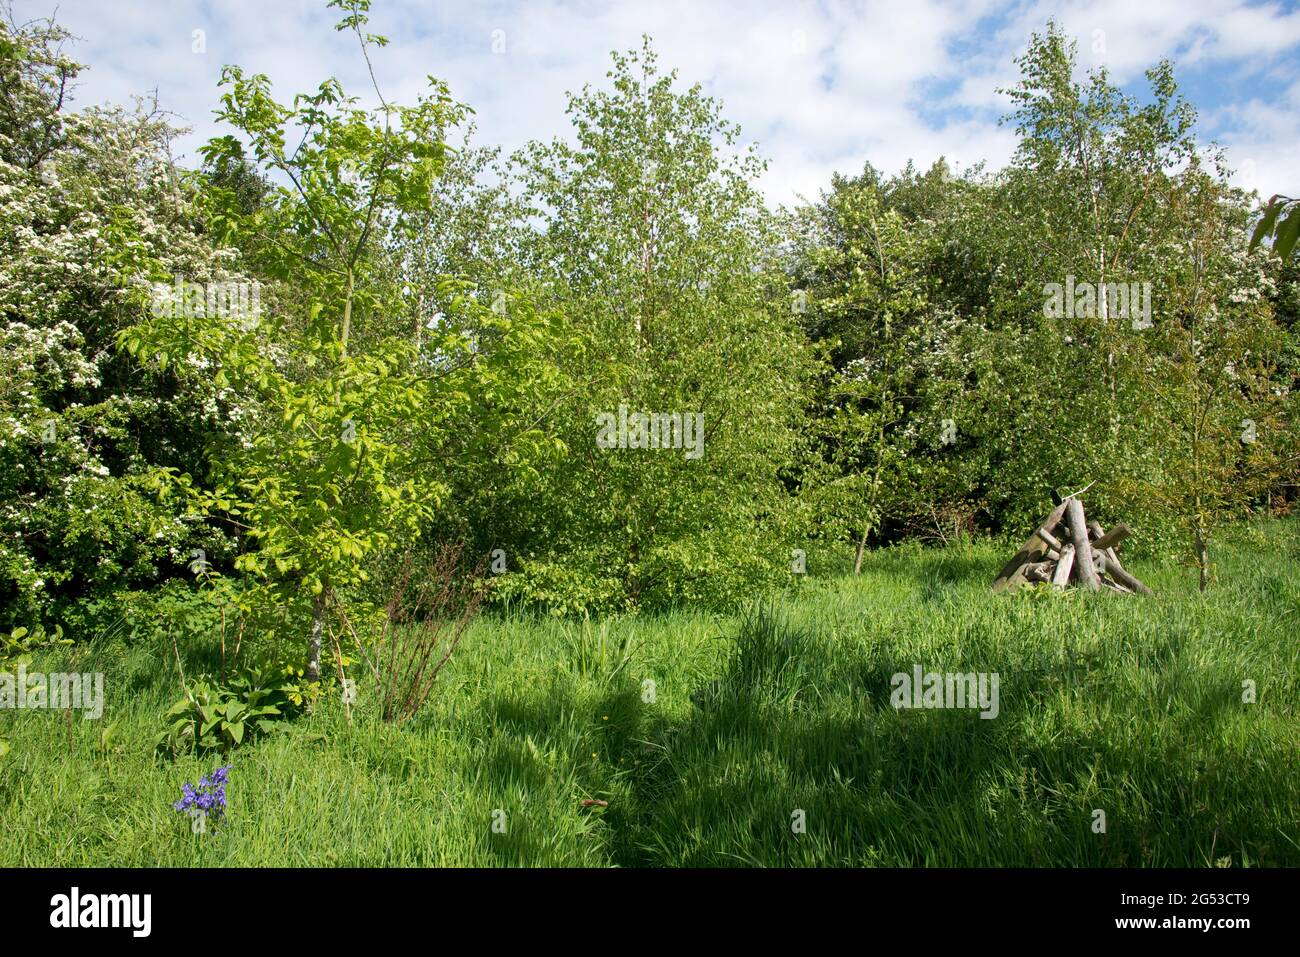 Piccolo bosco giovane e ruvido giardino con alberi in primavera, erba lunga, bluebells e un rifugio di pali di legno per mammiferi e invertebrati, Berkshire, maggio Foto Stock